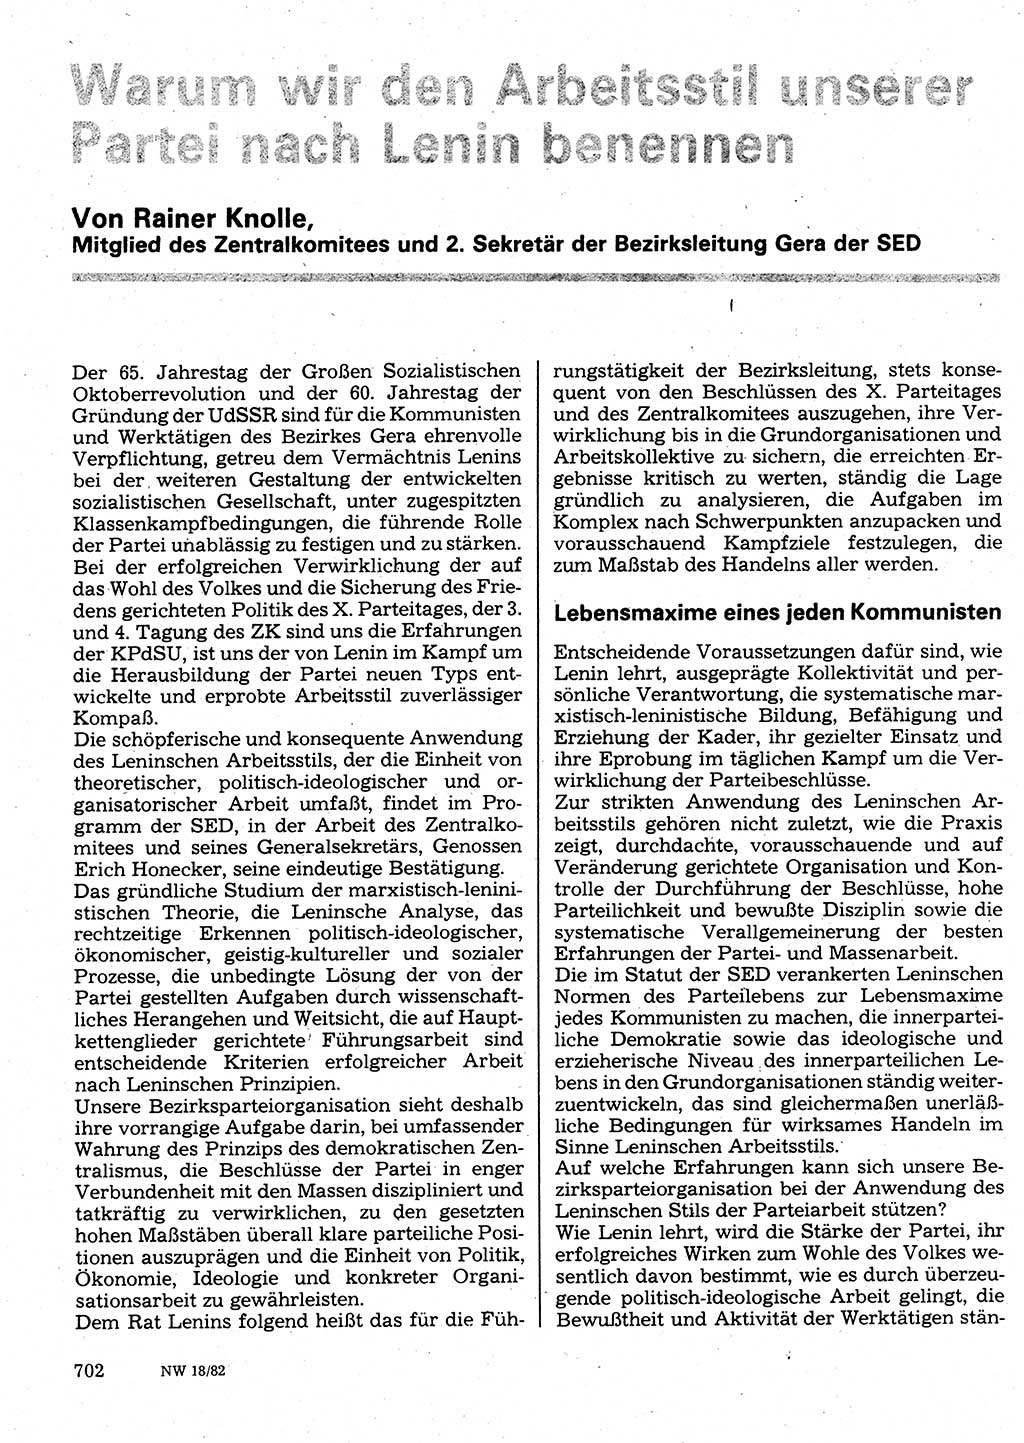 Neuer Weg (NW), Organ des Zentralkomitees (ZK) der SED (Sozialistische Einheitspartei Deutschlands) für Fragen des Parteilebens, 37. Jahrgang [Deutsche Demokratische Republik (DDR)] 1982, Seite 702 (NW ZK SED DDR 1982, S. 702)